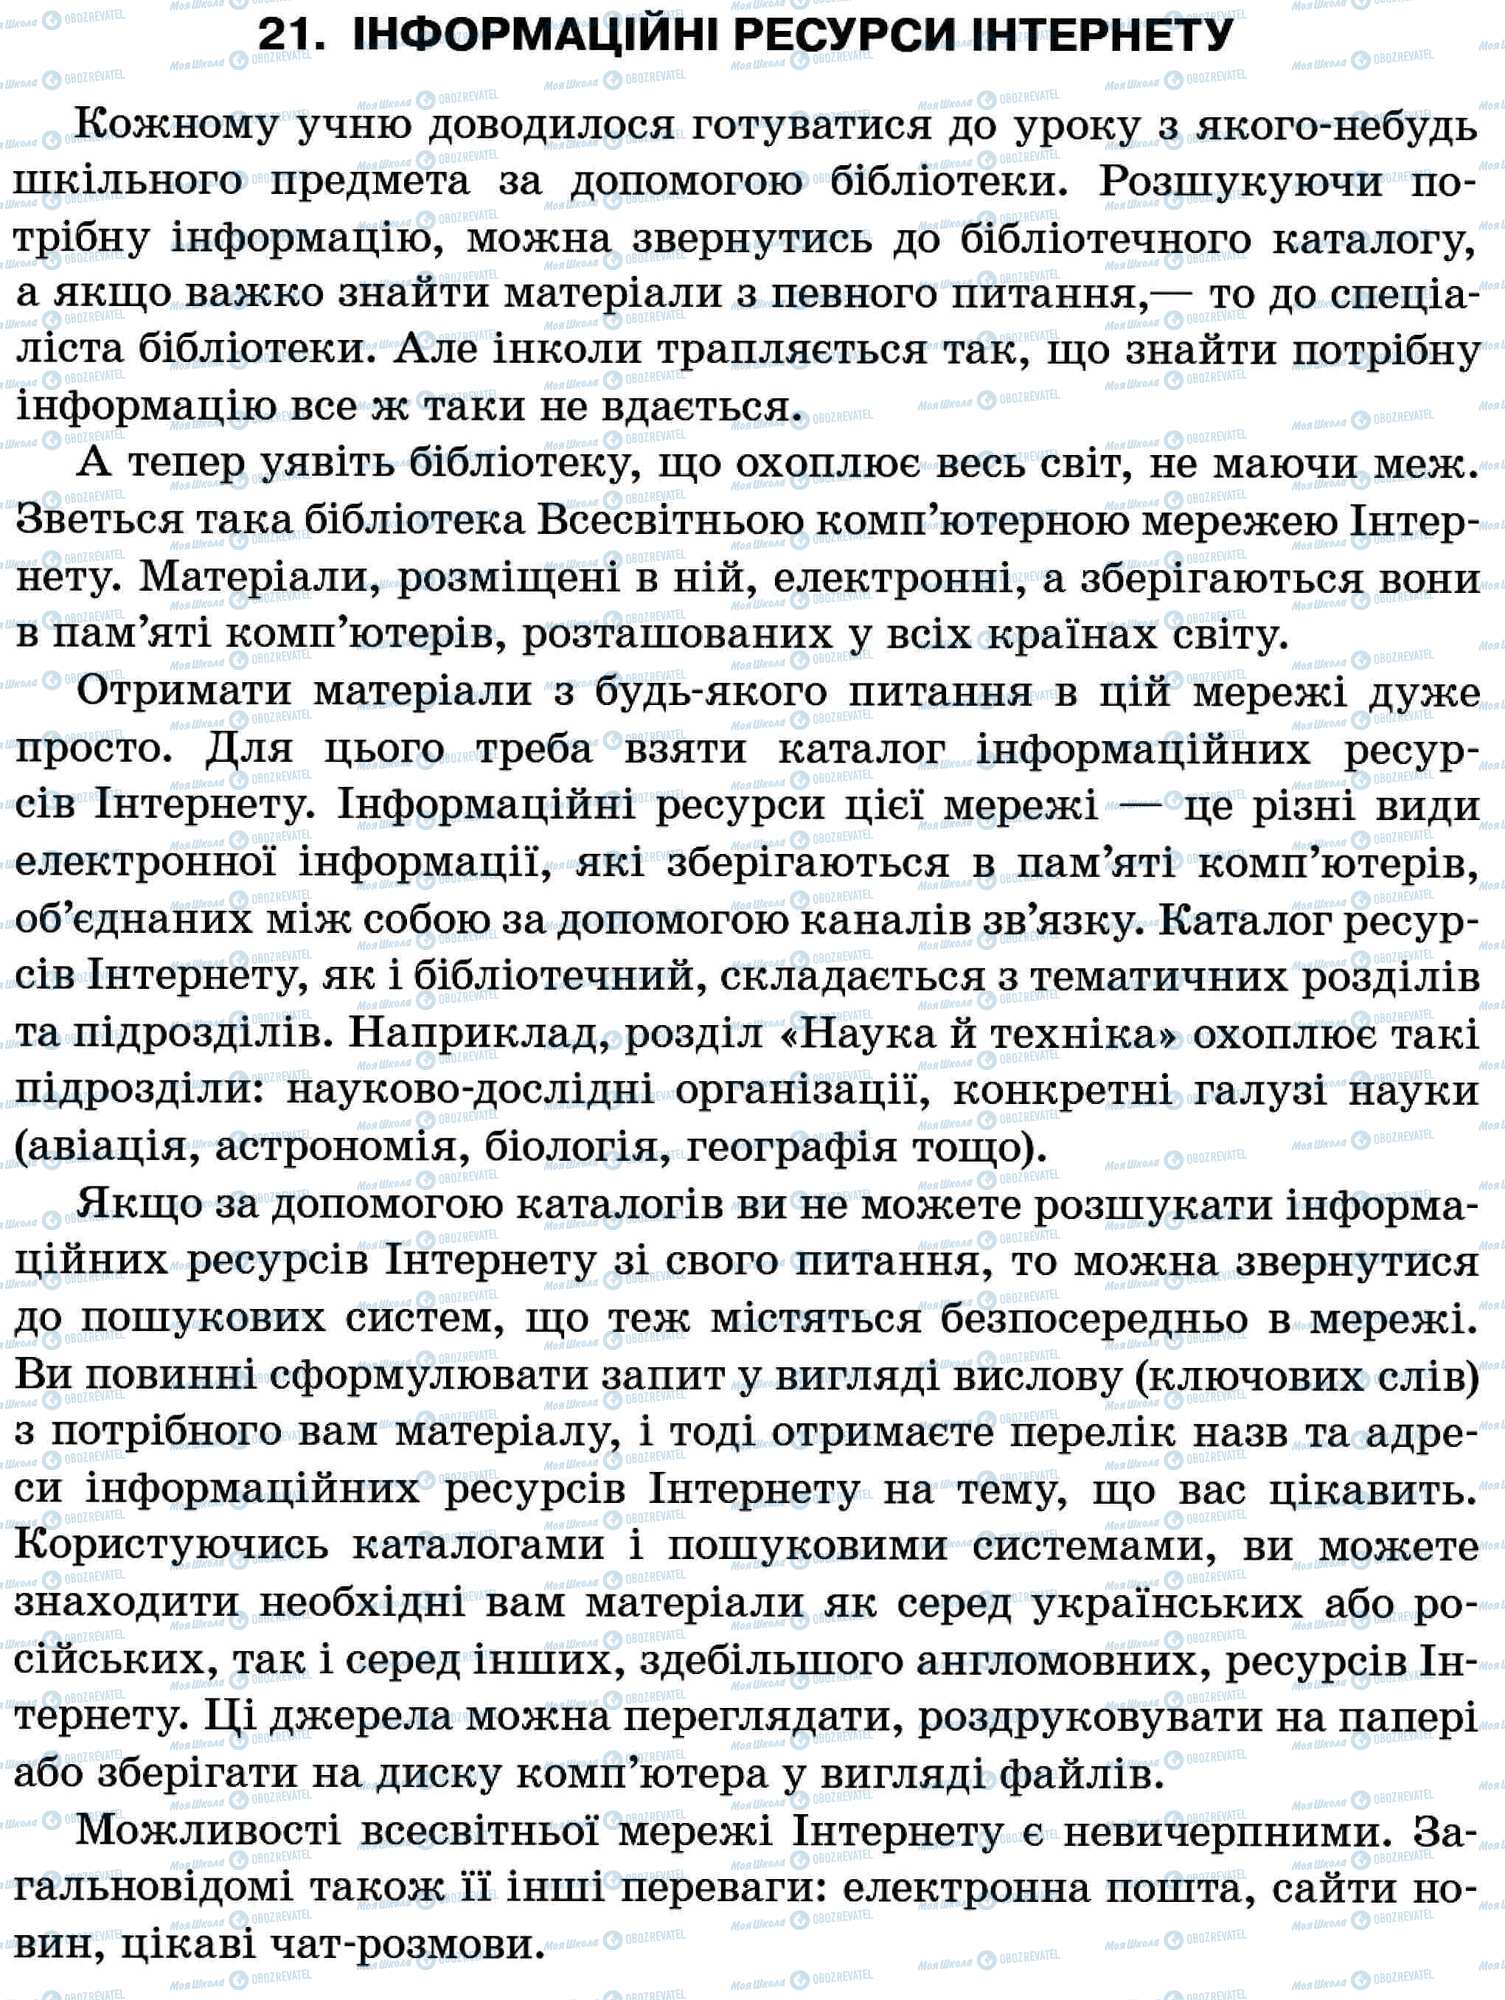 ДПА Укр мова 11 класс страница 21. Інформаційні ресурси Інтернету